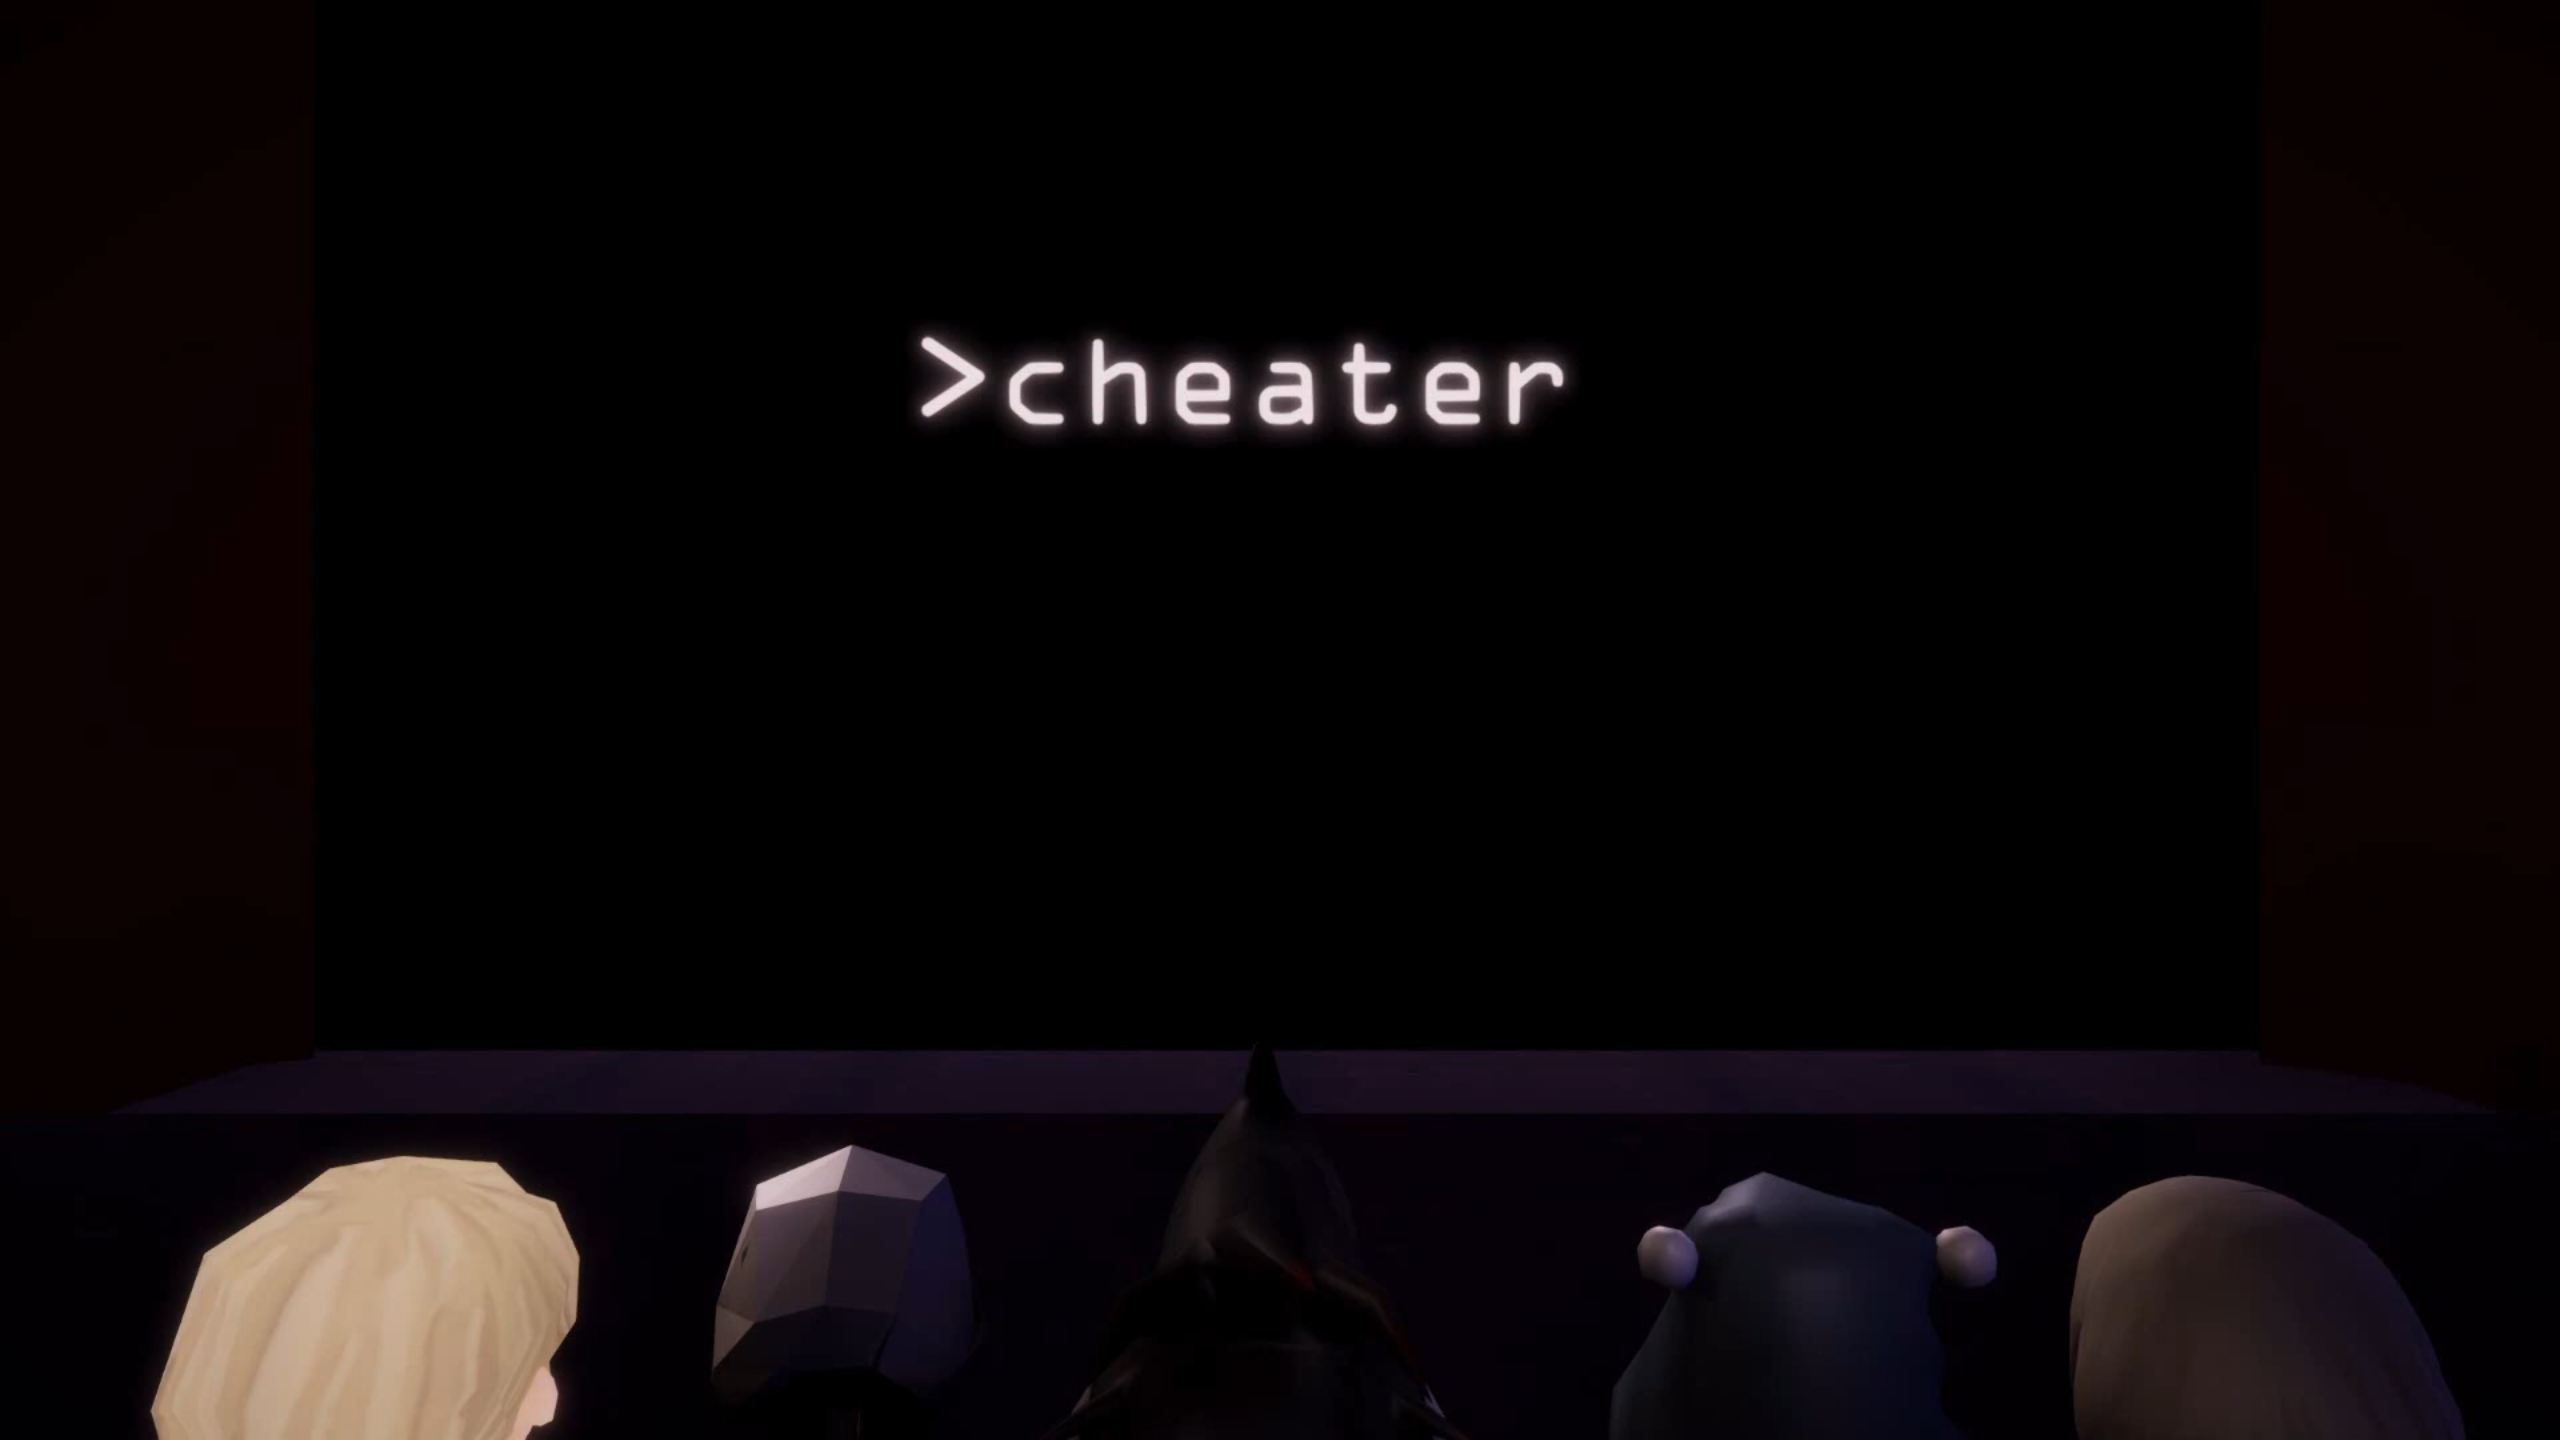 >cheater